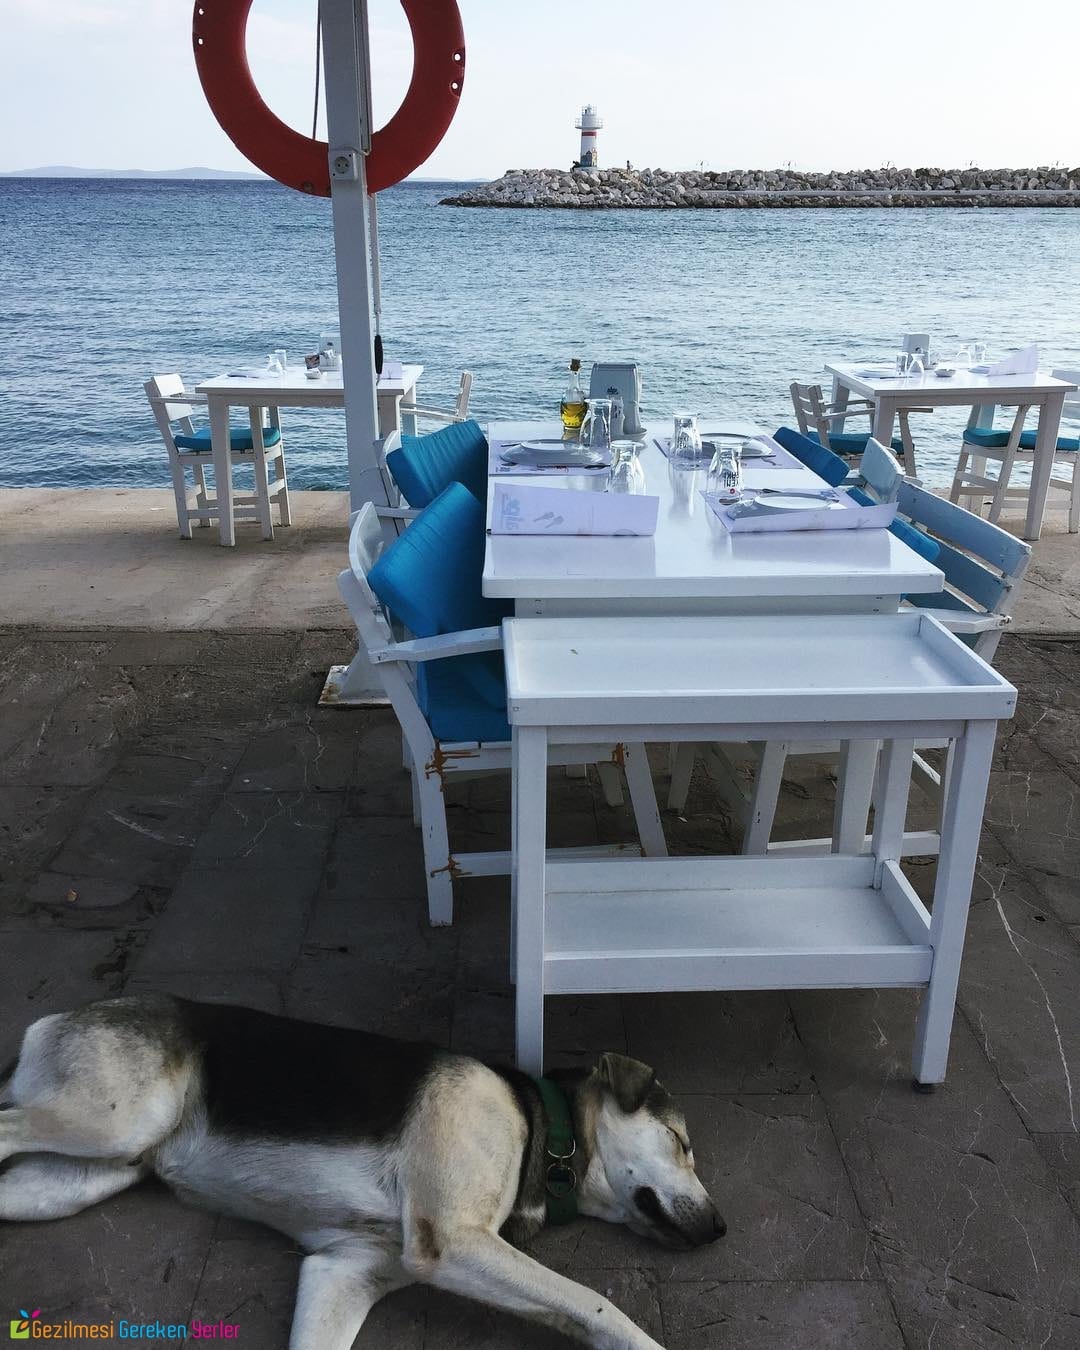 Yengeç Restaurant - İzmir Deniz Manzaralı Restoranlar